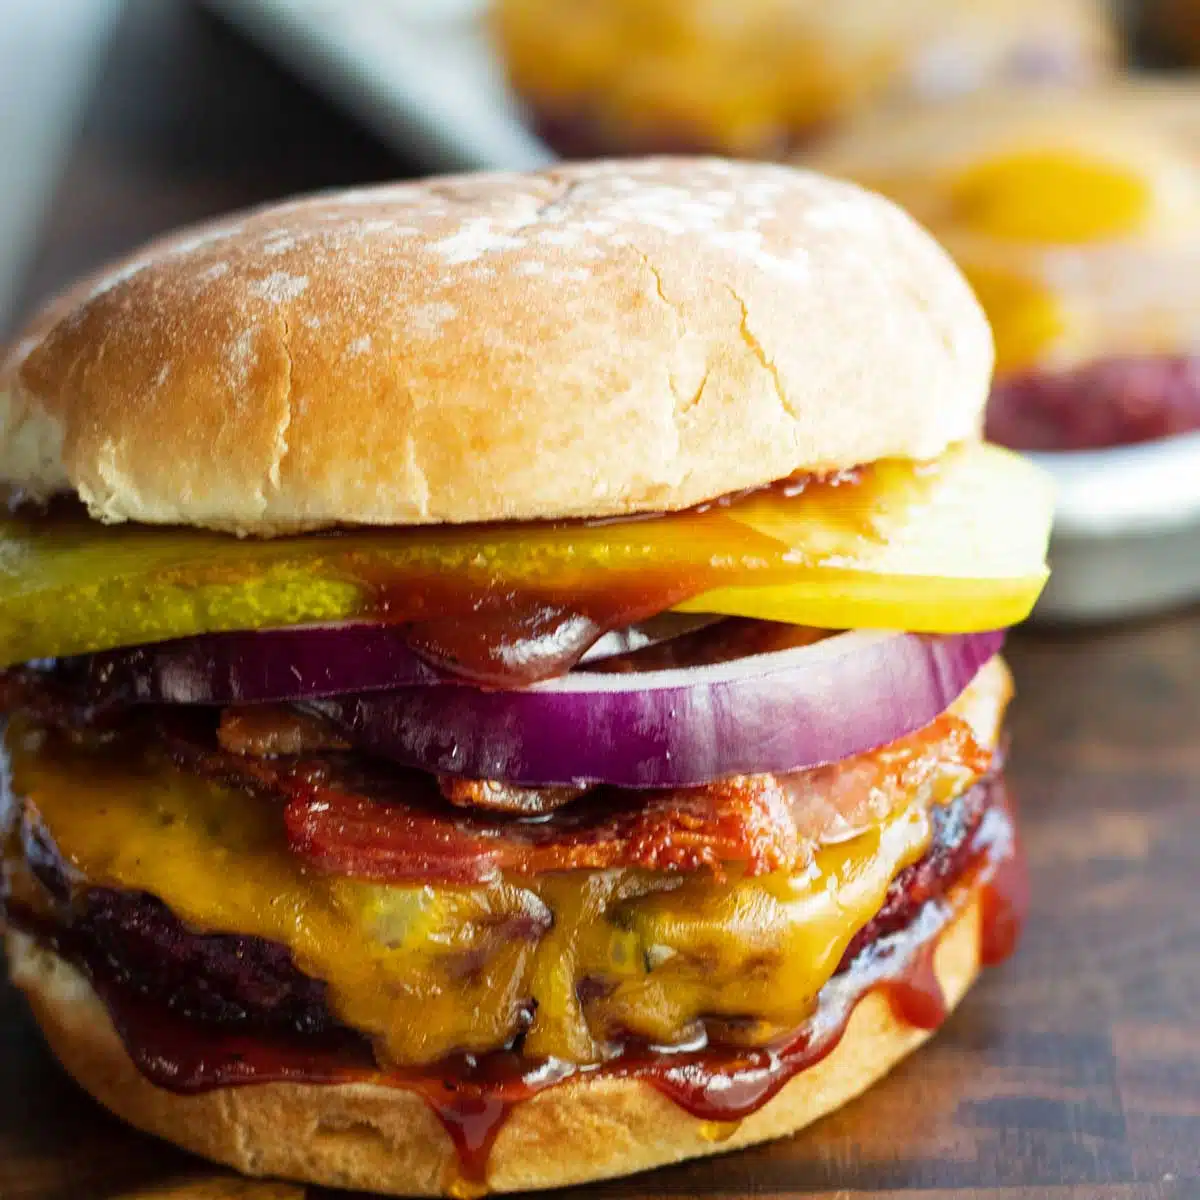 रात्रिभोज की योजना बनाने के लिए चुनने के लिए सभी बेहतरीन और स्वादिष्ट बर्गर टॉपिंग विचार!